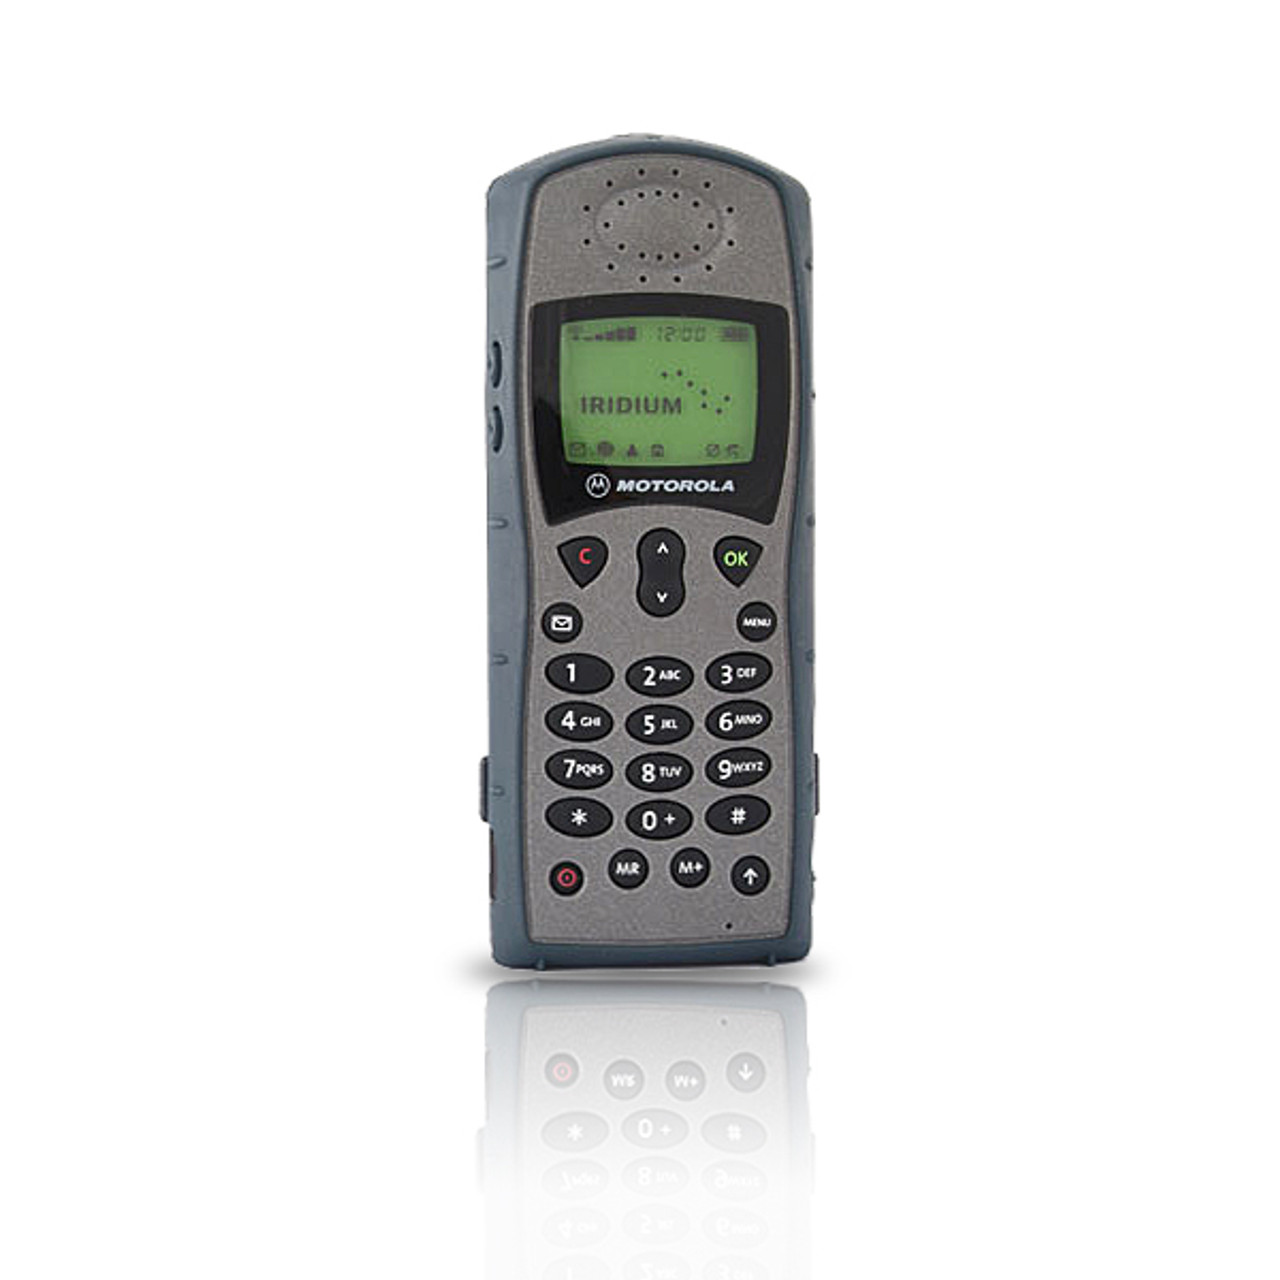 Iridium 9505A Satellite Phone - Refurbished